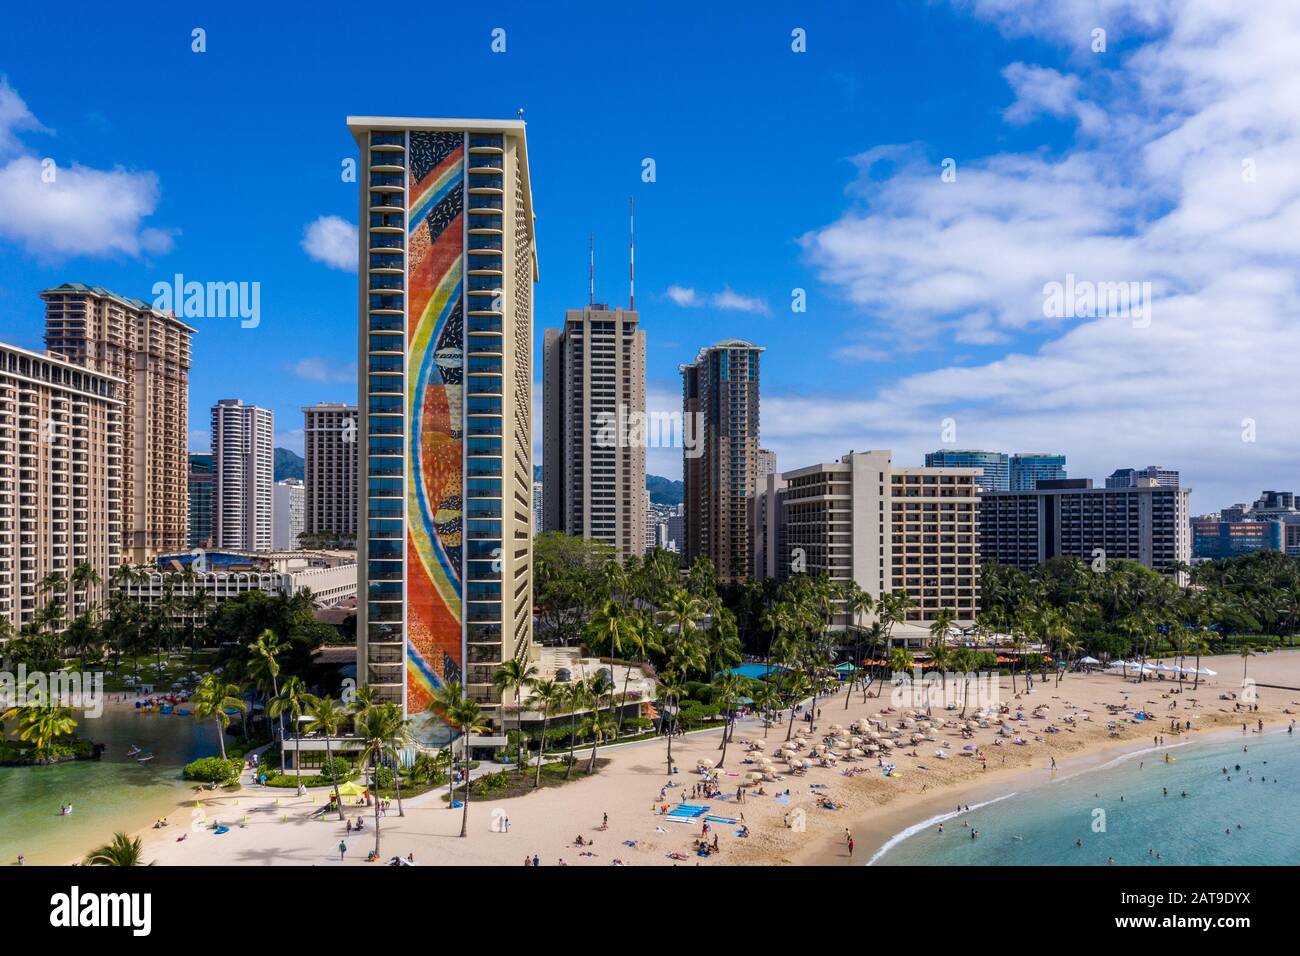 Waikiki, HI - 19 janvier 2020: Vue aérienne de la tour arc-en-ciel à l'avant du Hilton Hawaiian Village sur la plage de Waikiki à Hawaï Banque D'Images